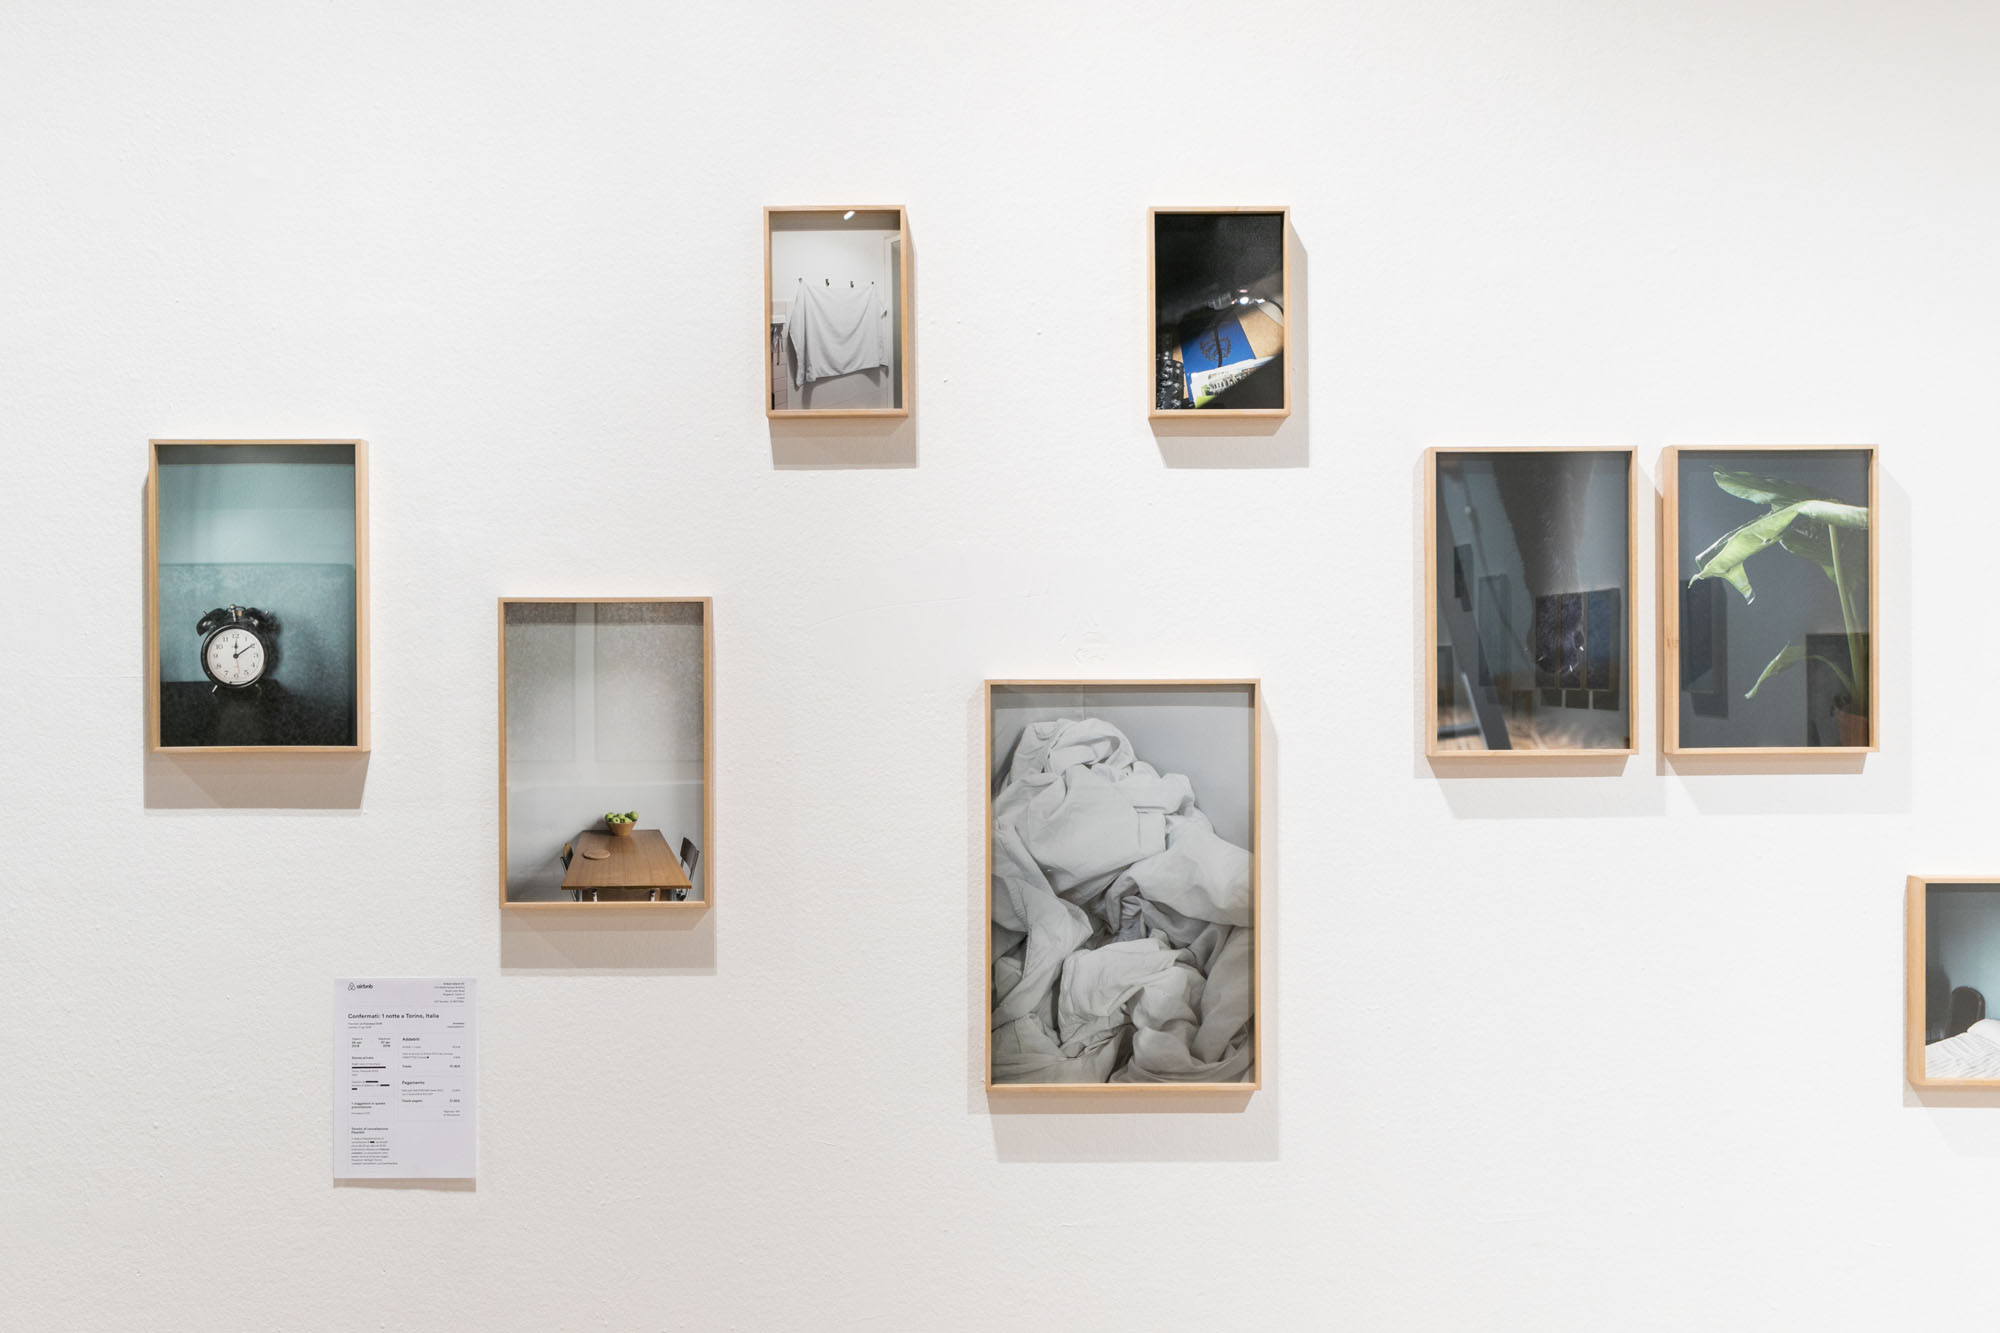 Il progetto “Check in'” di Francesca Cirilli esposto nella mostra “Abitanti. Sette sguardi sull'Italia di oggi”, Triennale di Milano, 2018